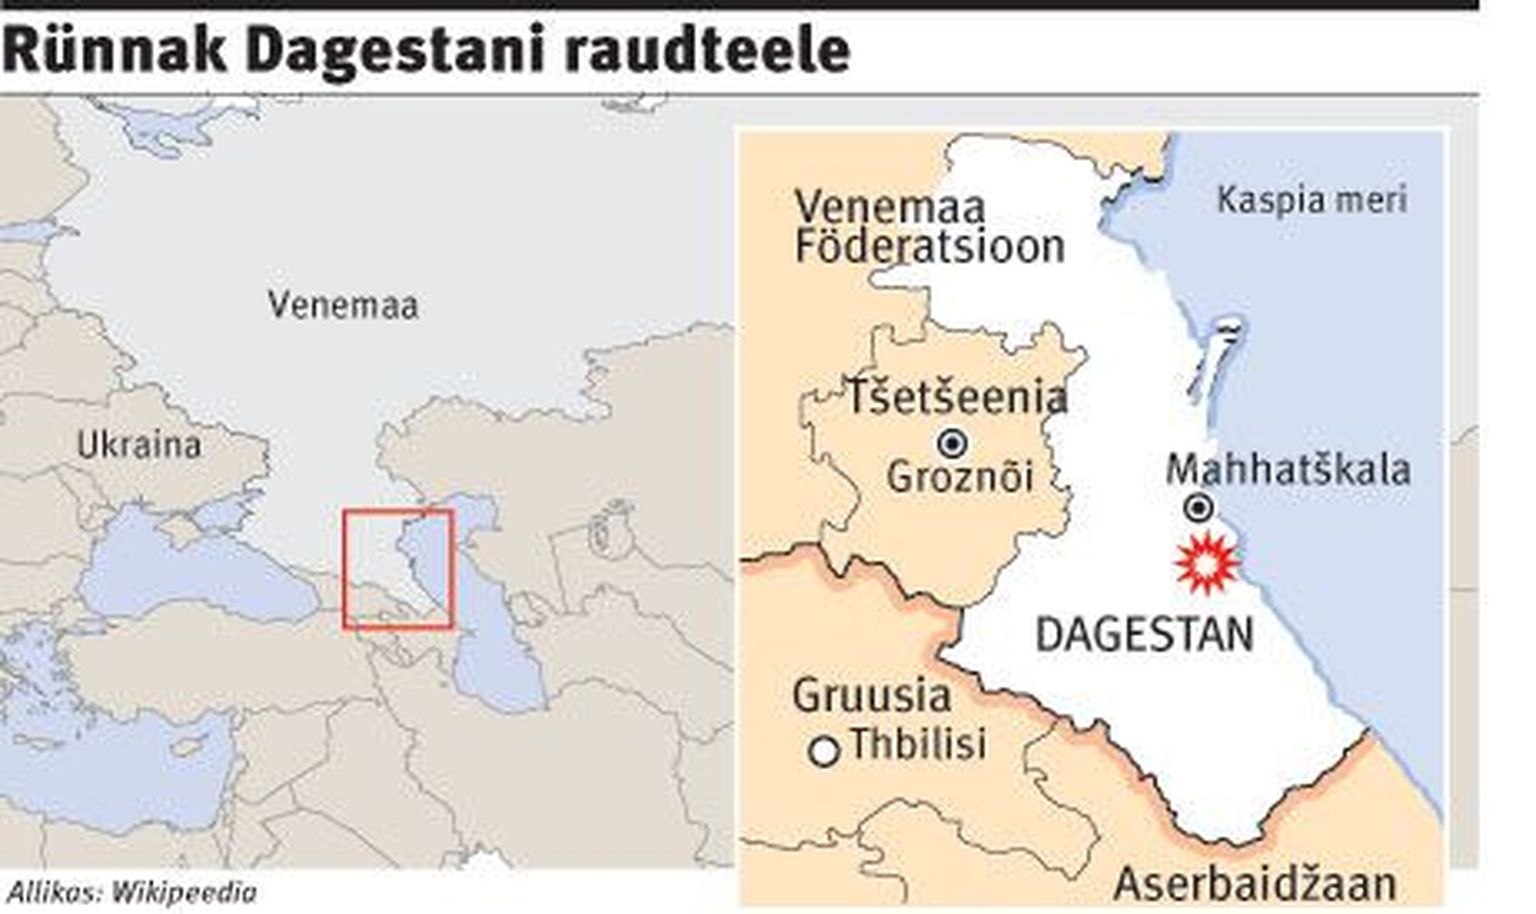 Rünnak Dagestani raudteele.